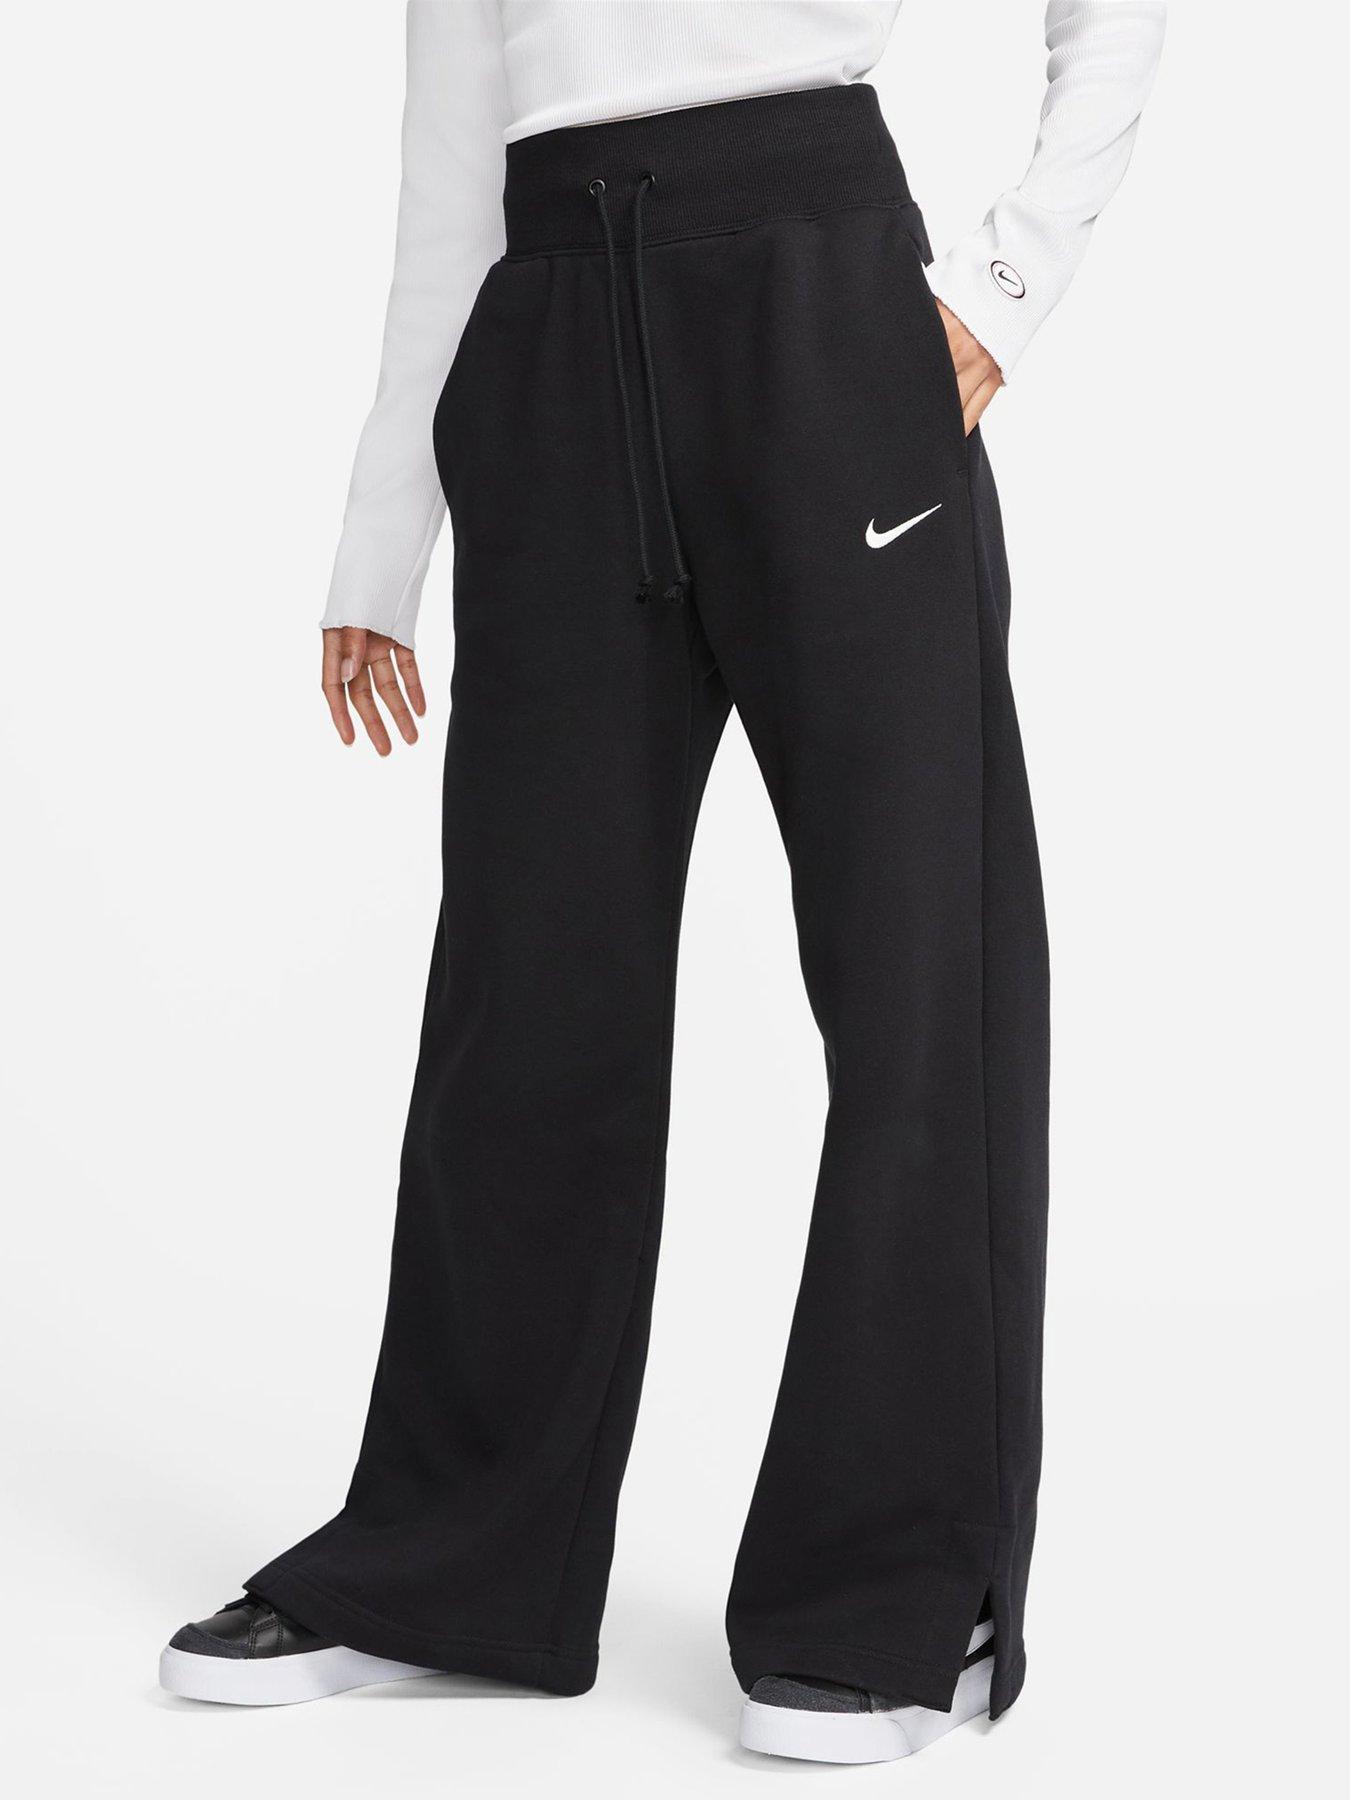 Jogging bottoms, Sportswear, Women, Nike